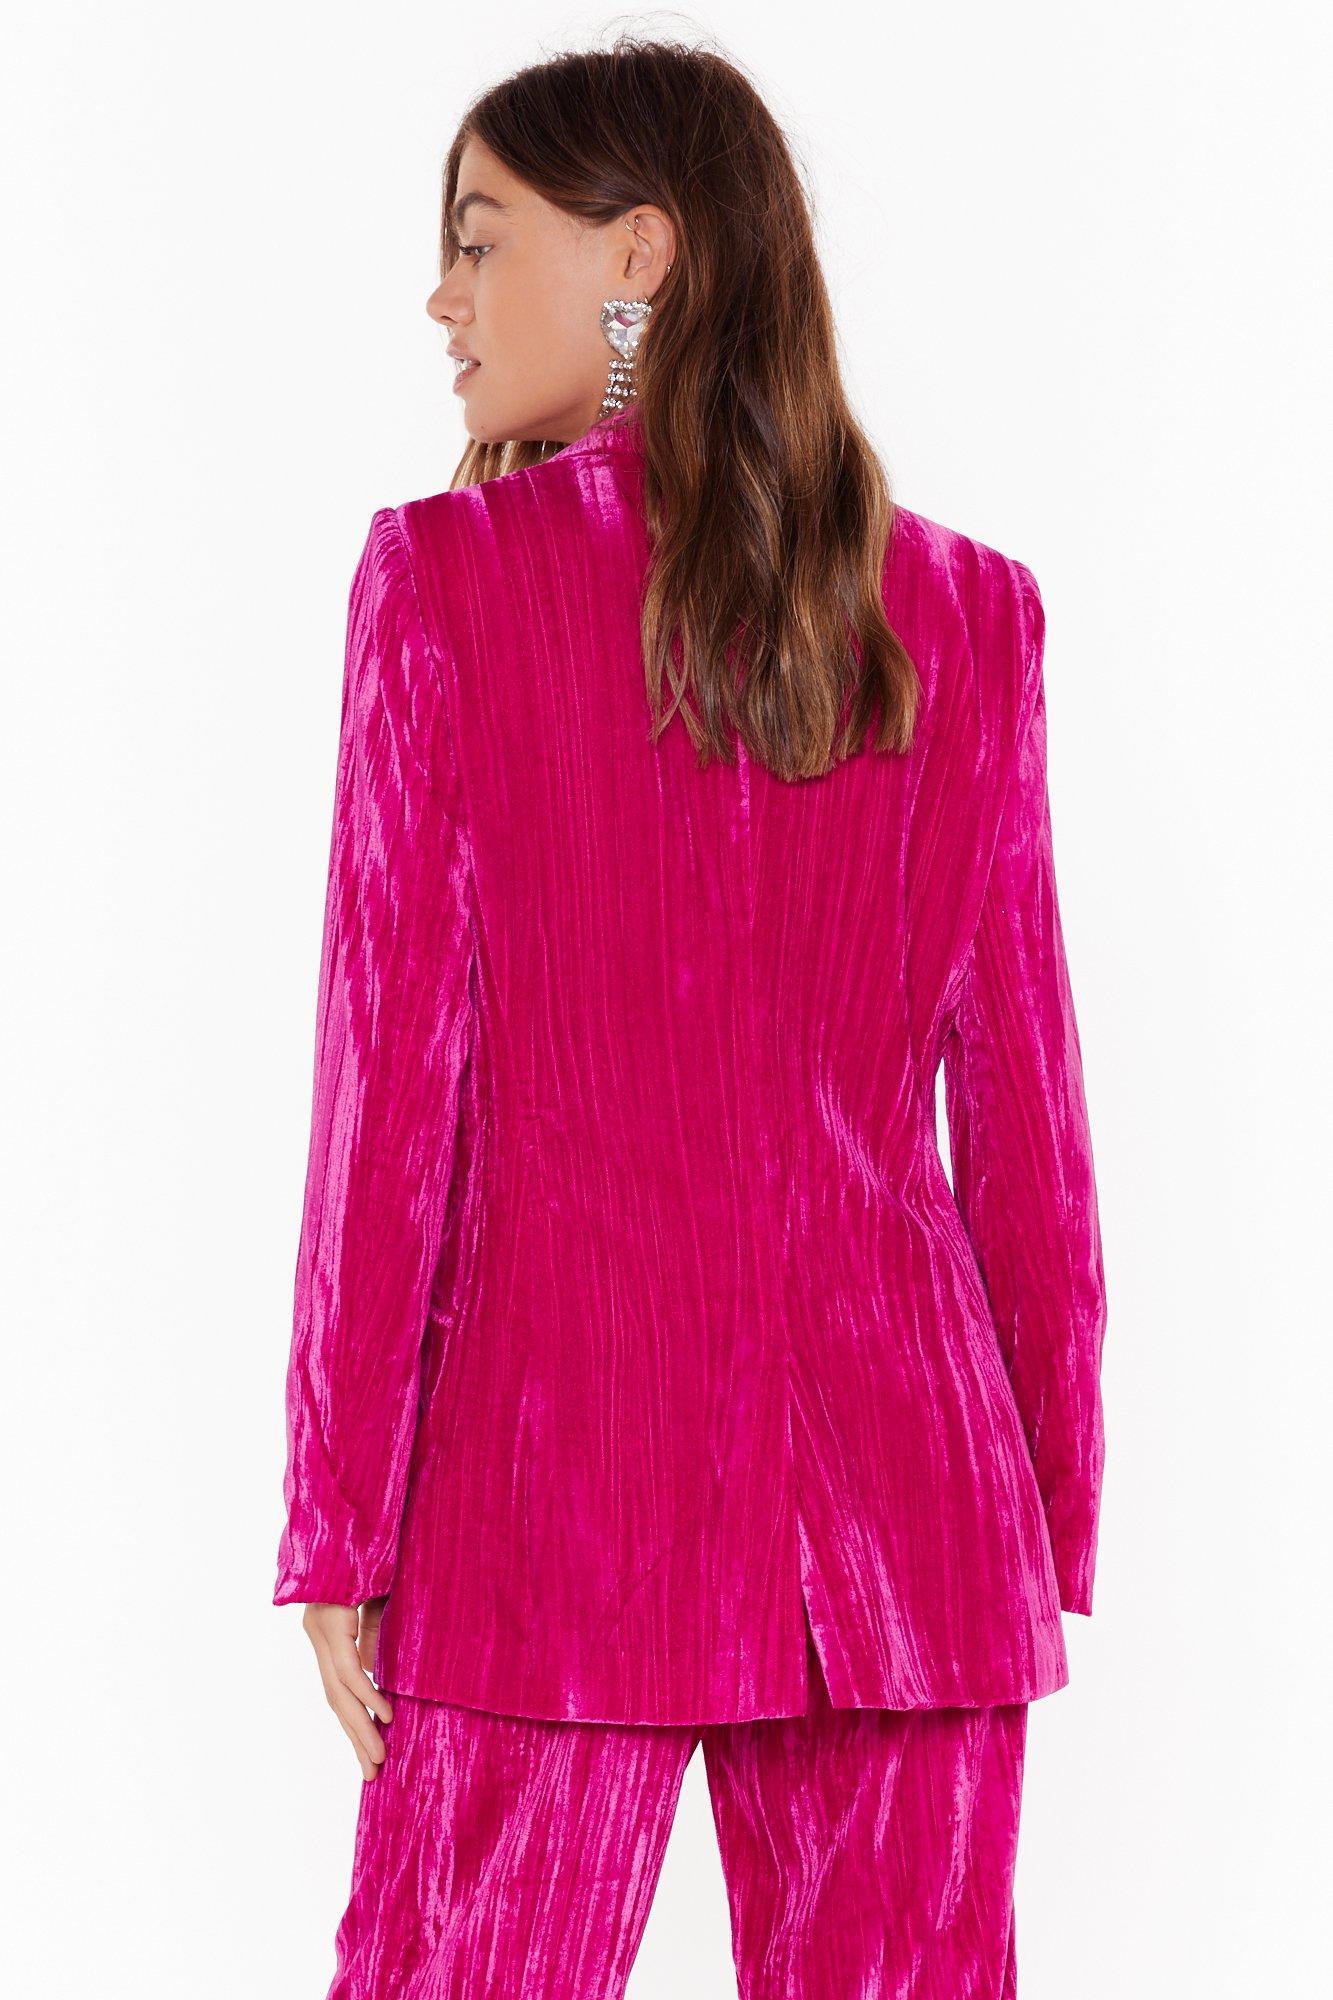 Buy nasty gal velvet suit cheap online